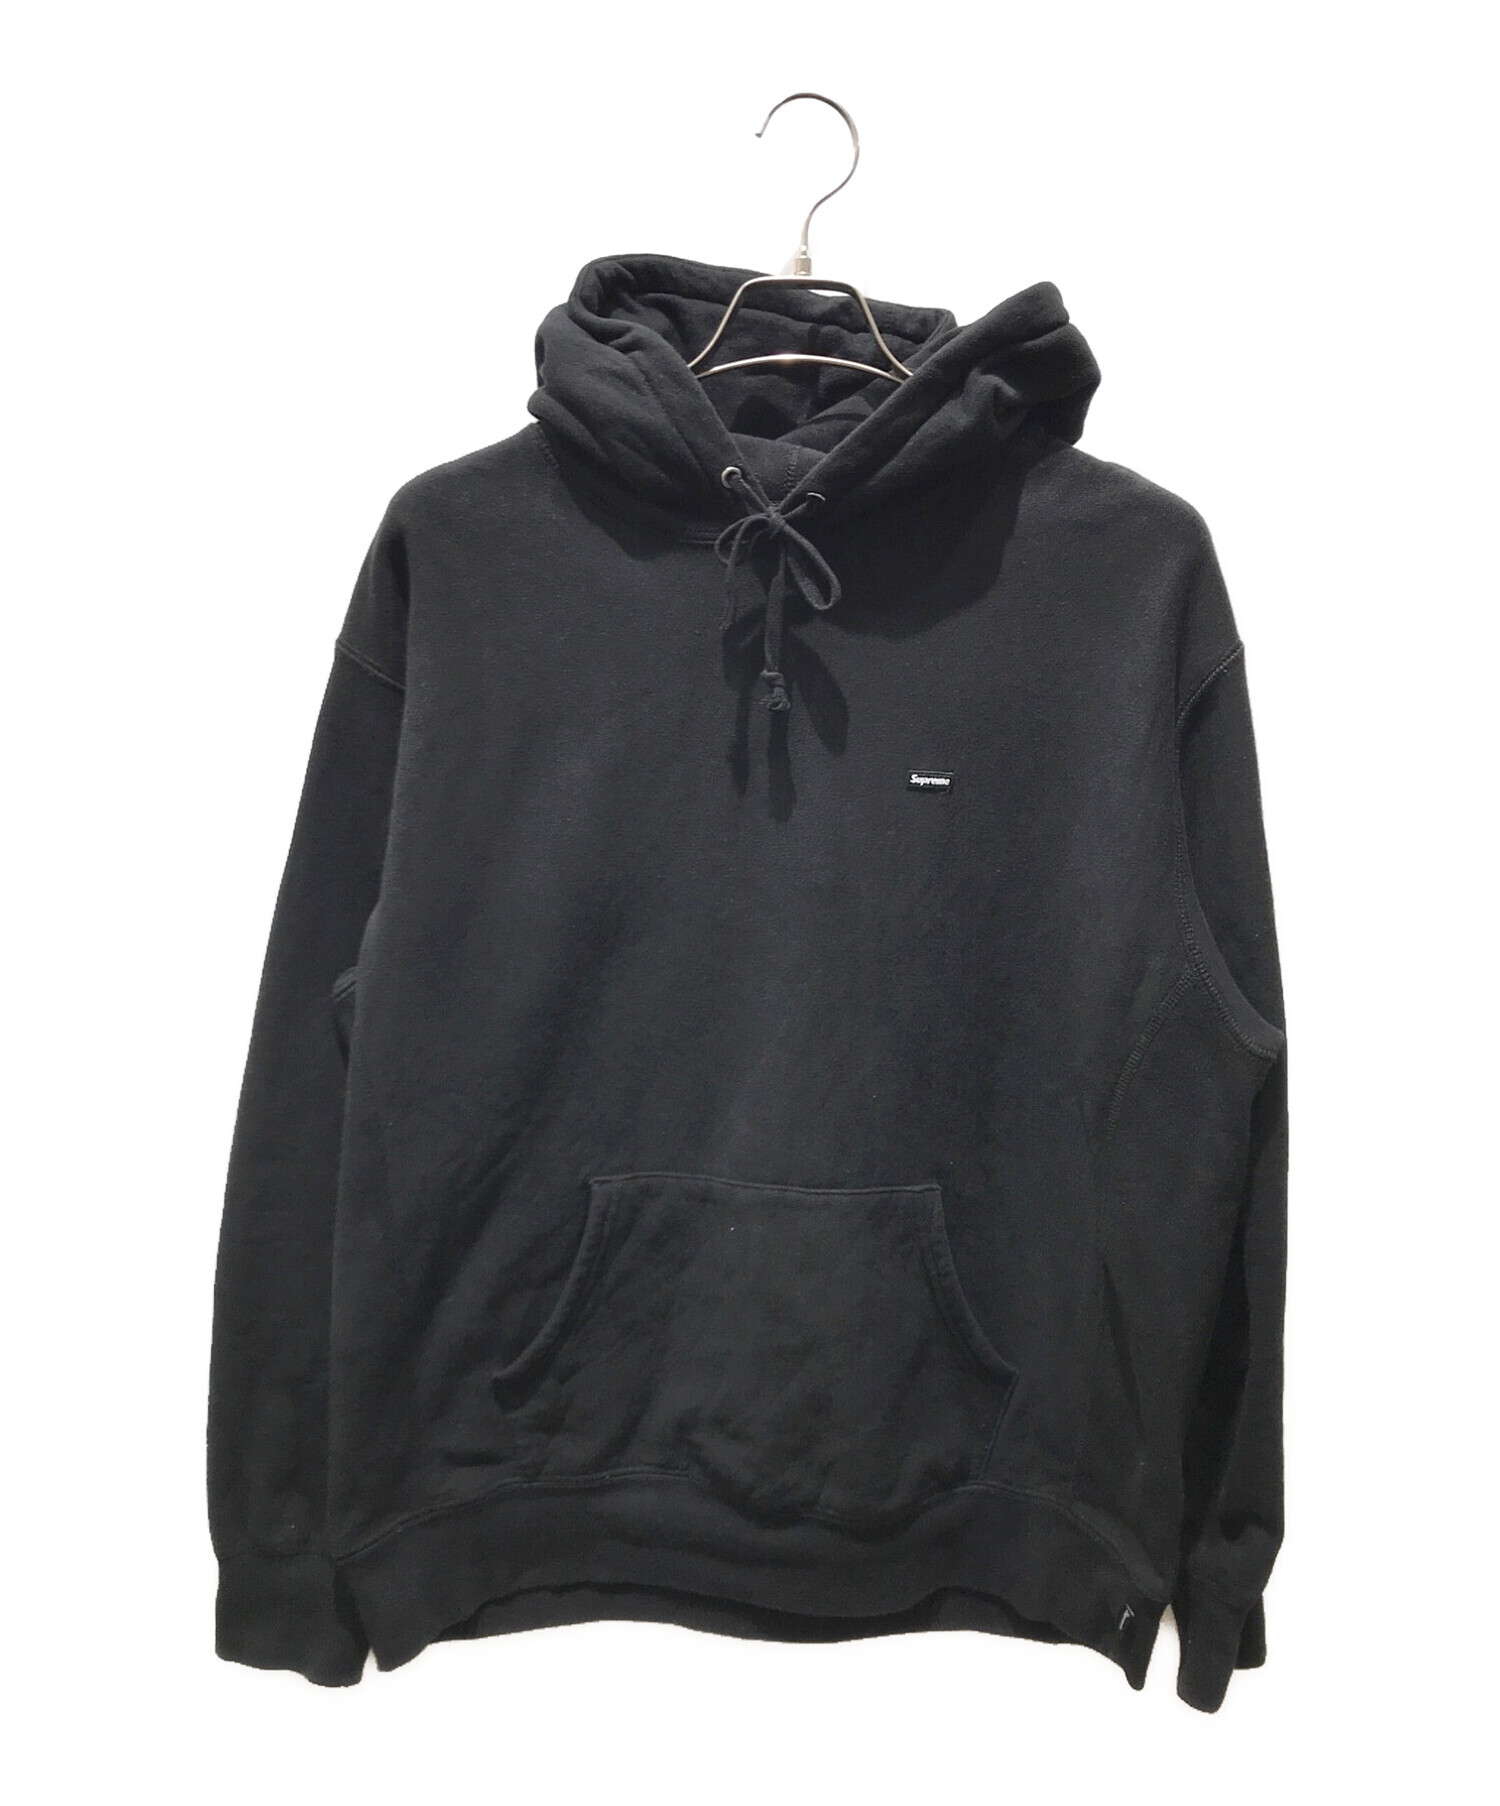 SUPREME (シュプリーム) Small Box Hooded Sweatshirt/スモール ボックス フーディー スウェットシャツ ブラック  サイズ:M